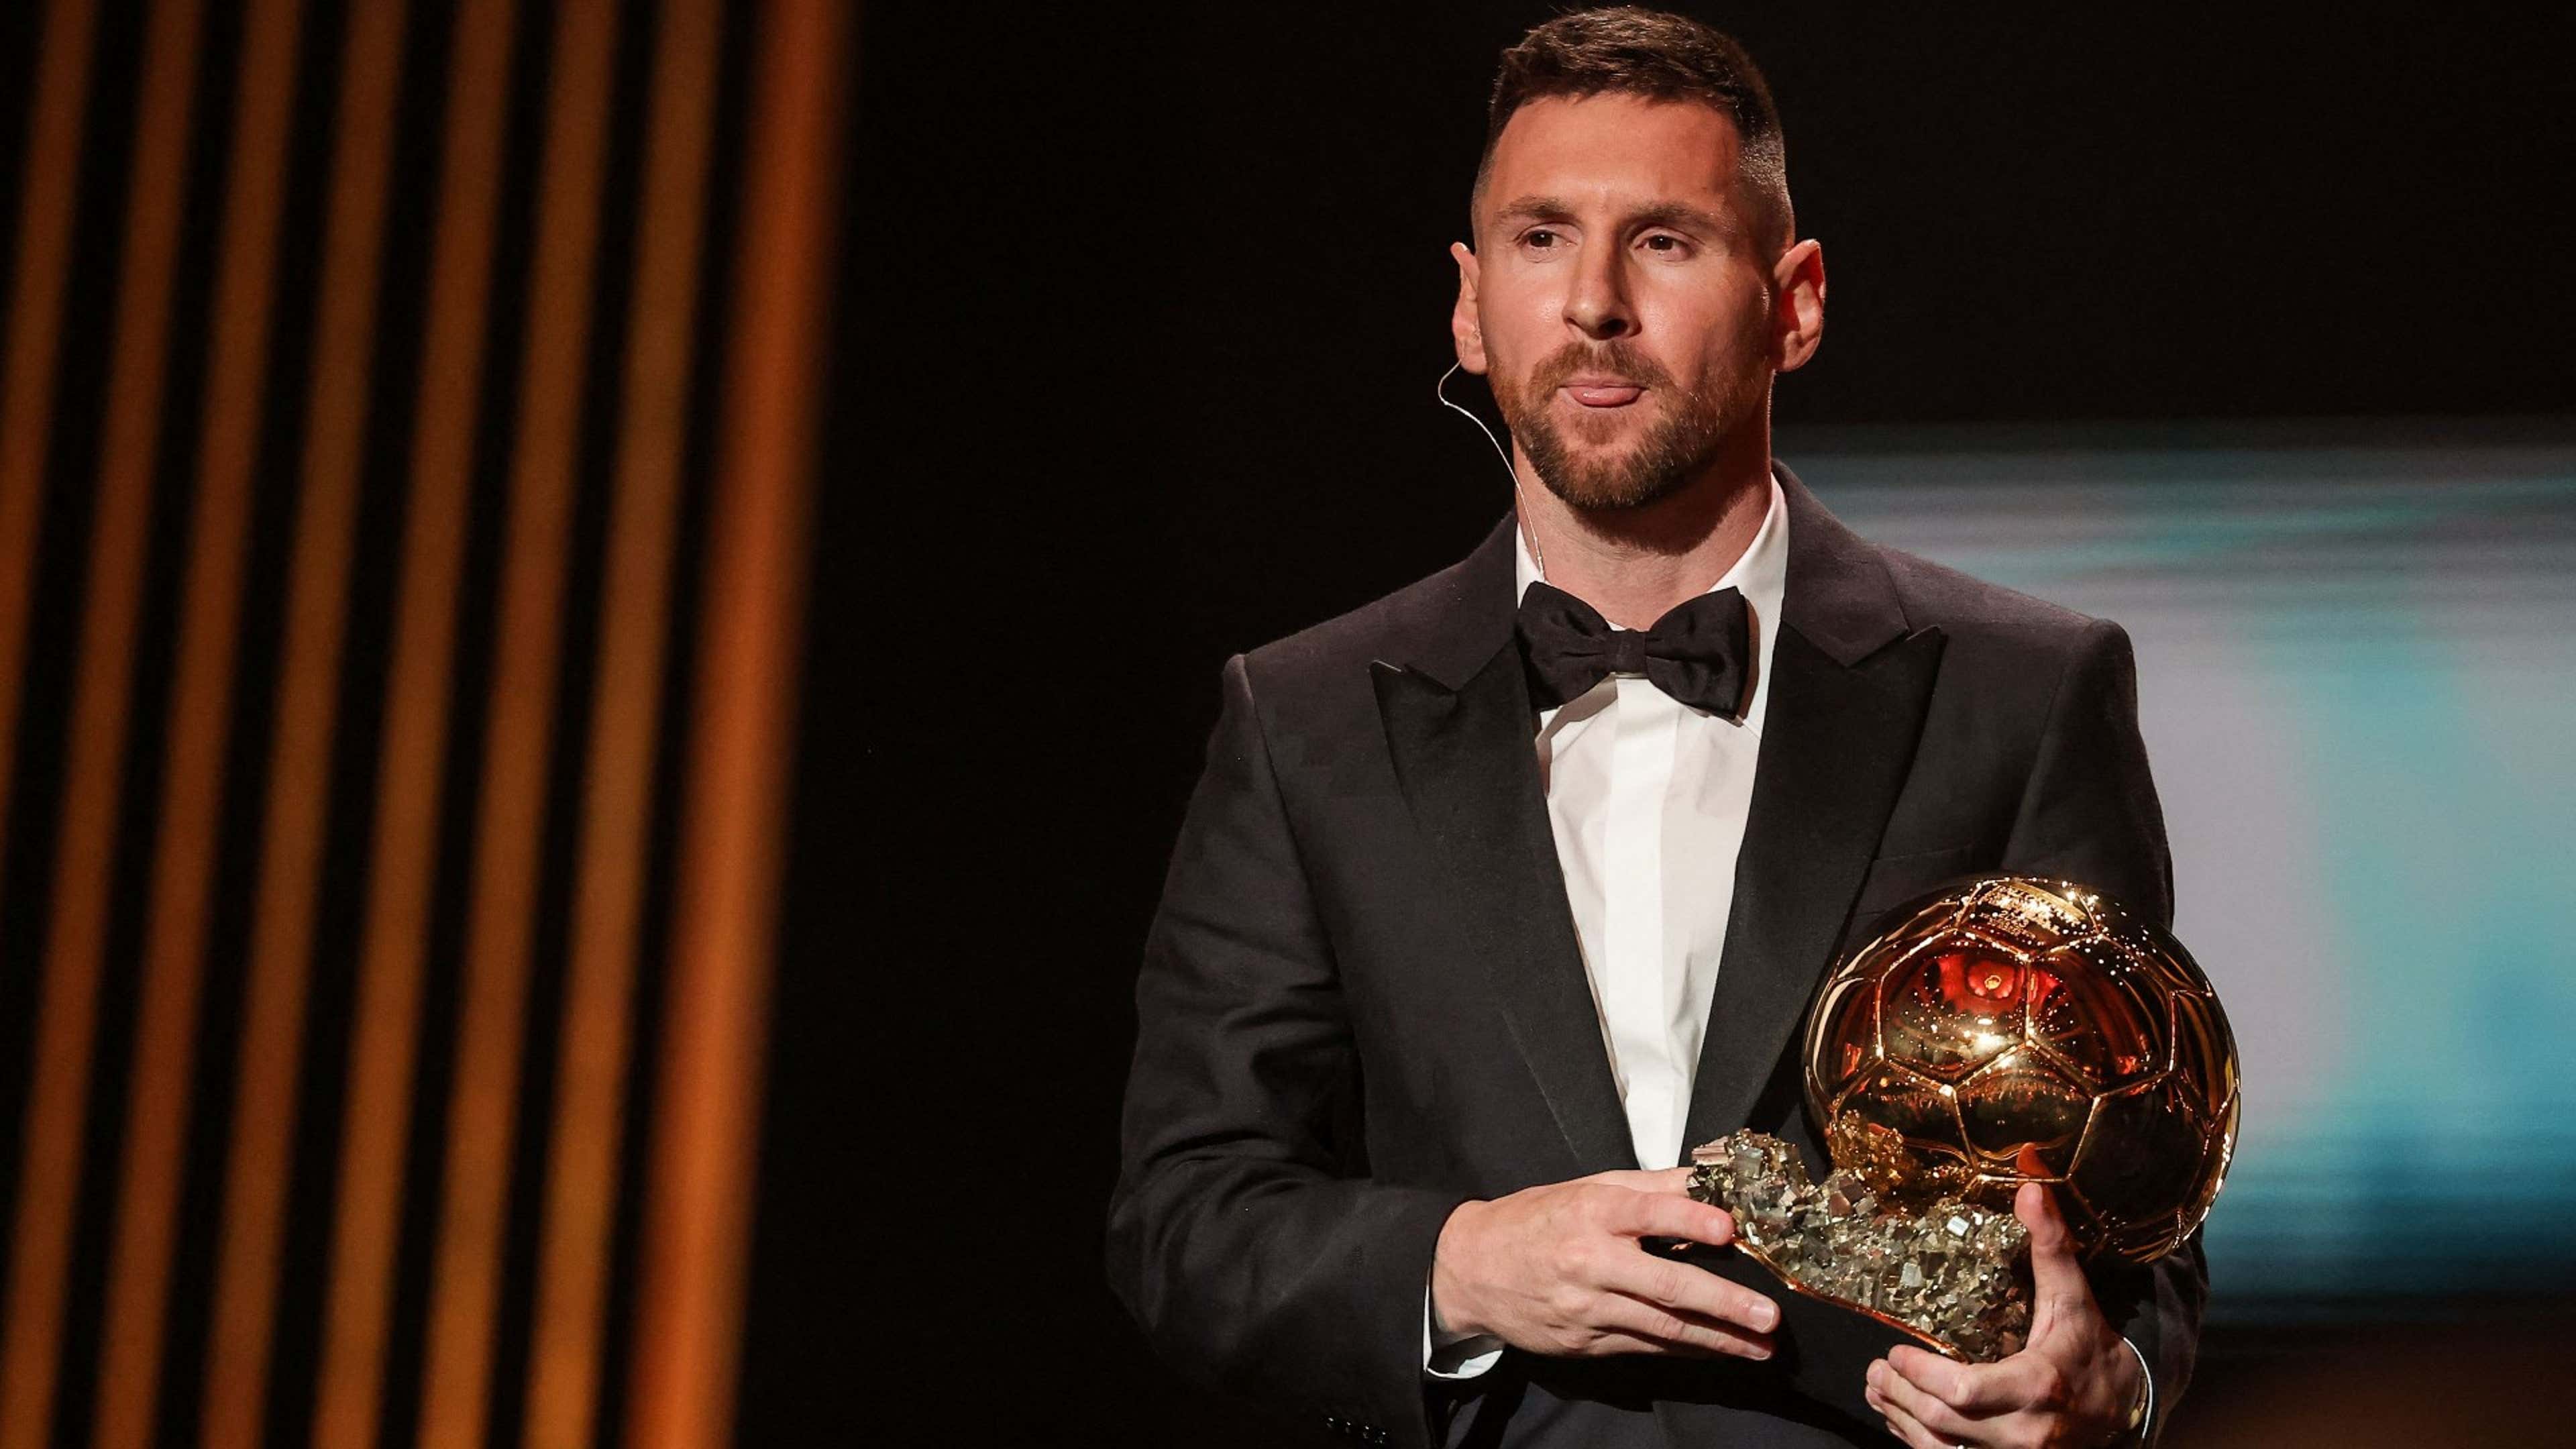 Aujourd'hui, Lionel Messi (PSG) est Ballon d'Or !